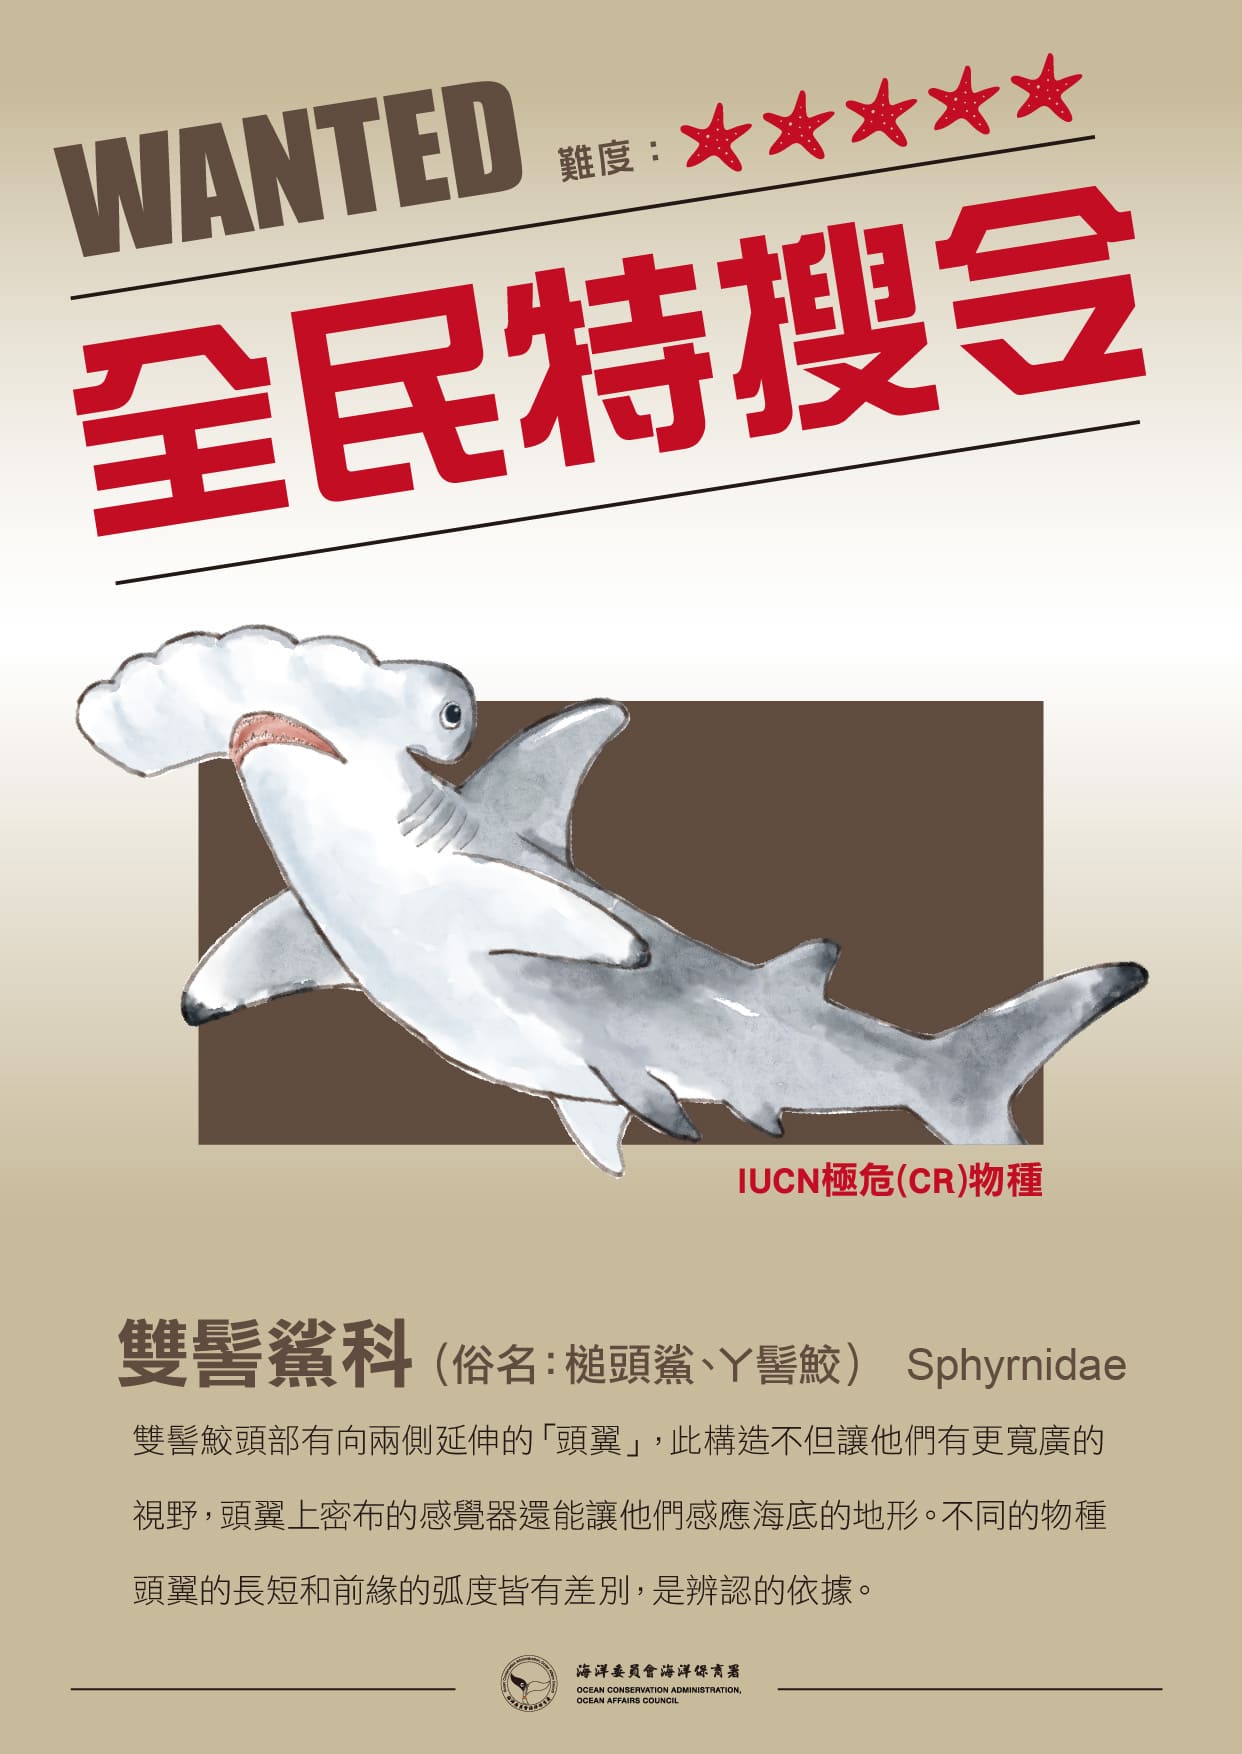 生物懸賞 0218 雙髻鯊科 海洋保育署 海洋關注物種目擊回報推廣計畫